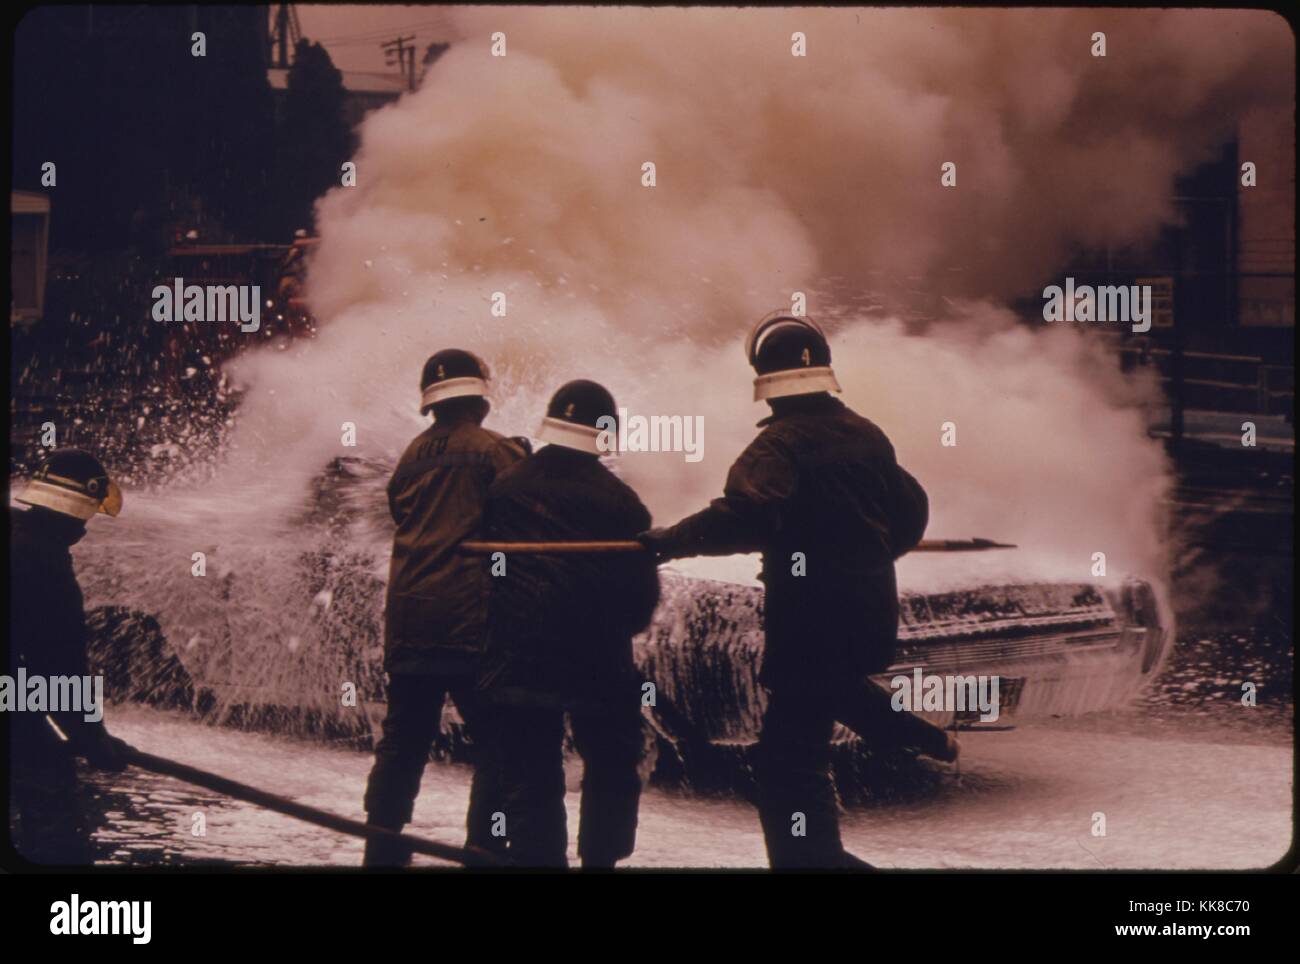 Macchina fuoco dimostrazione da parte dei Vigili del fuoco della stazione di formazione, Oregon. Immagine cortesia archivi nazionali, 1973. Foto Stock